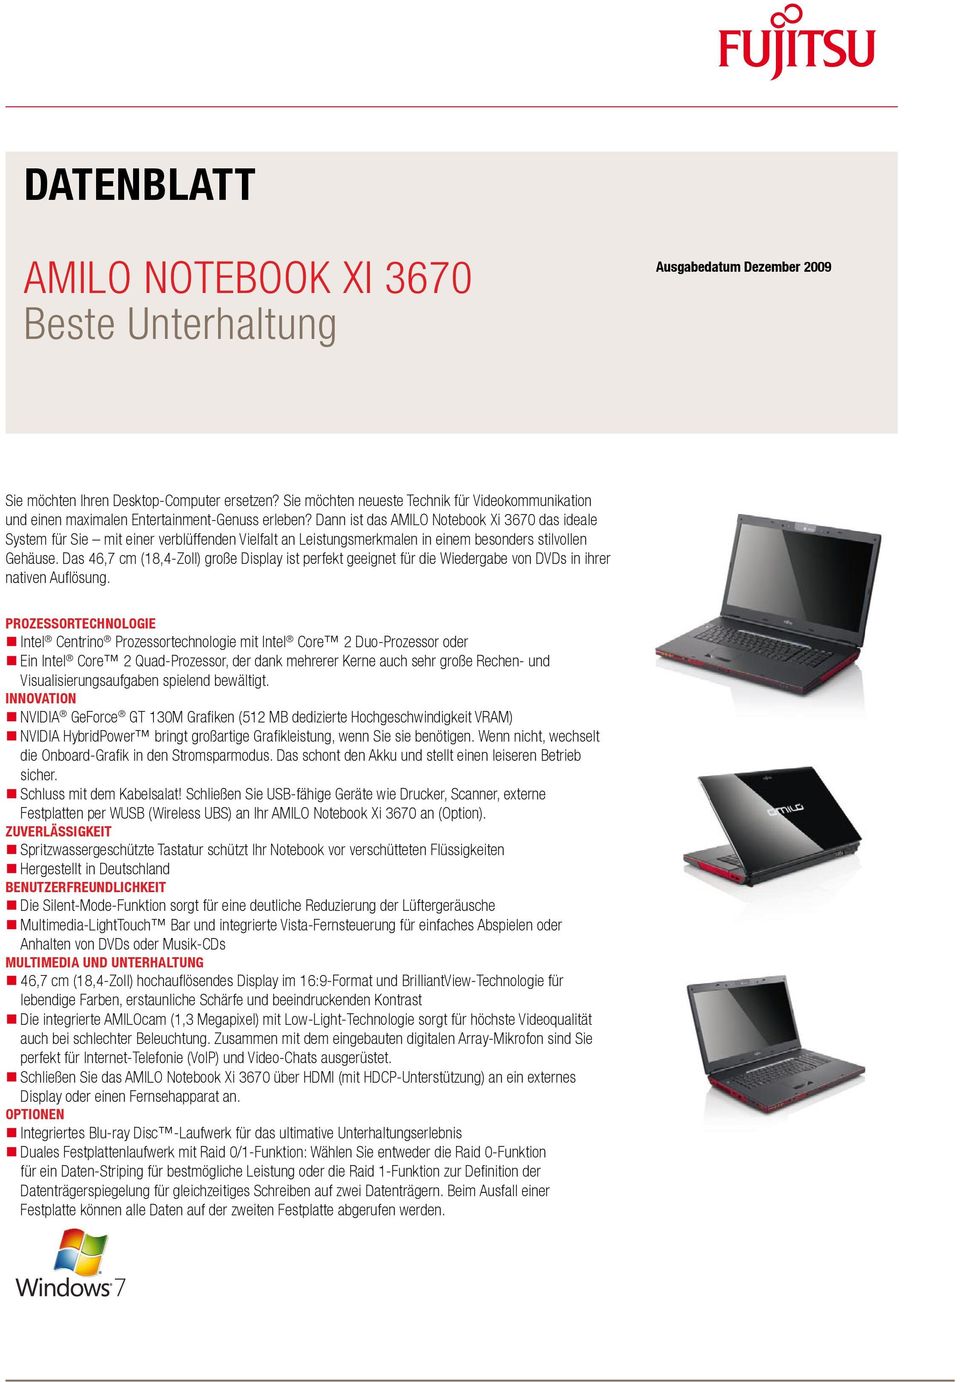 Dann ist das AMILO Notebook Xi 3670 das ideale System für Sie mit einer verblüffenden Vielfalt an Leistungsmerkmalen in einem besonders stilvollen Gehäuse.